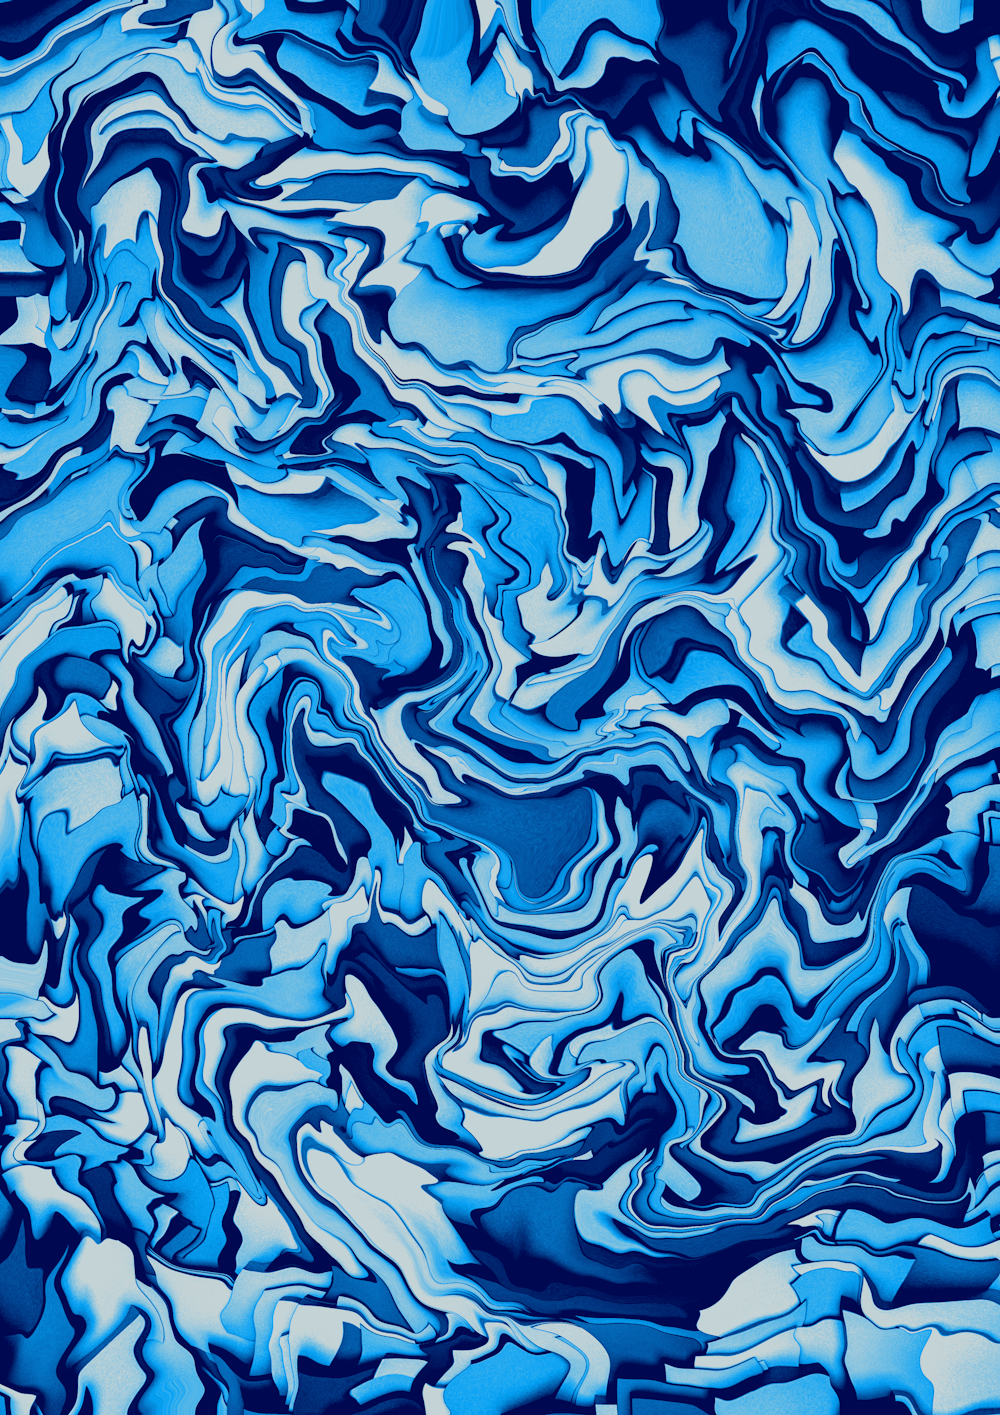 Ein blau-weißer abstrakter Hintergrund mit einem wellenförmigen Design